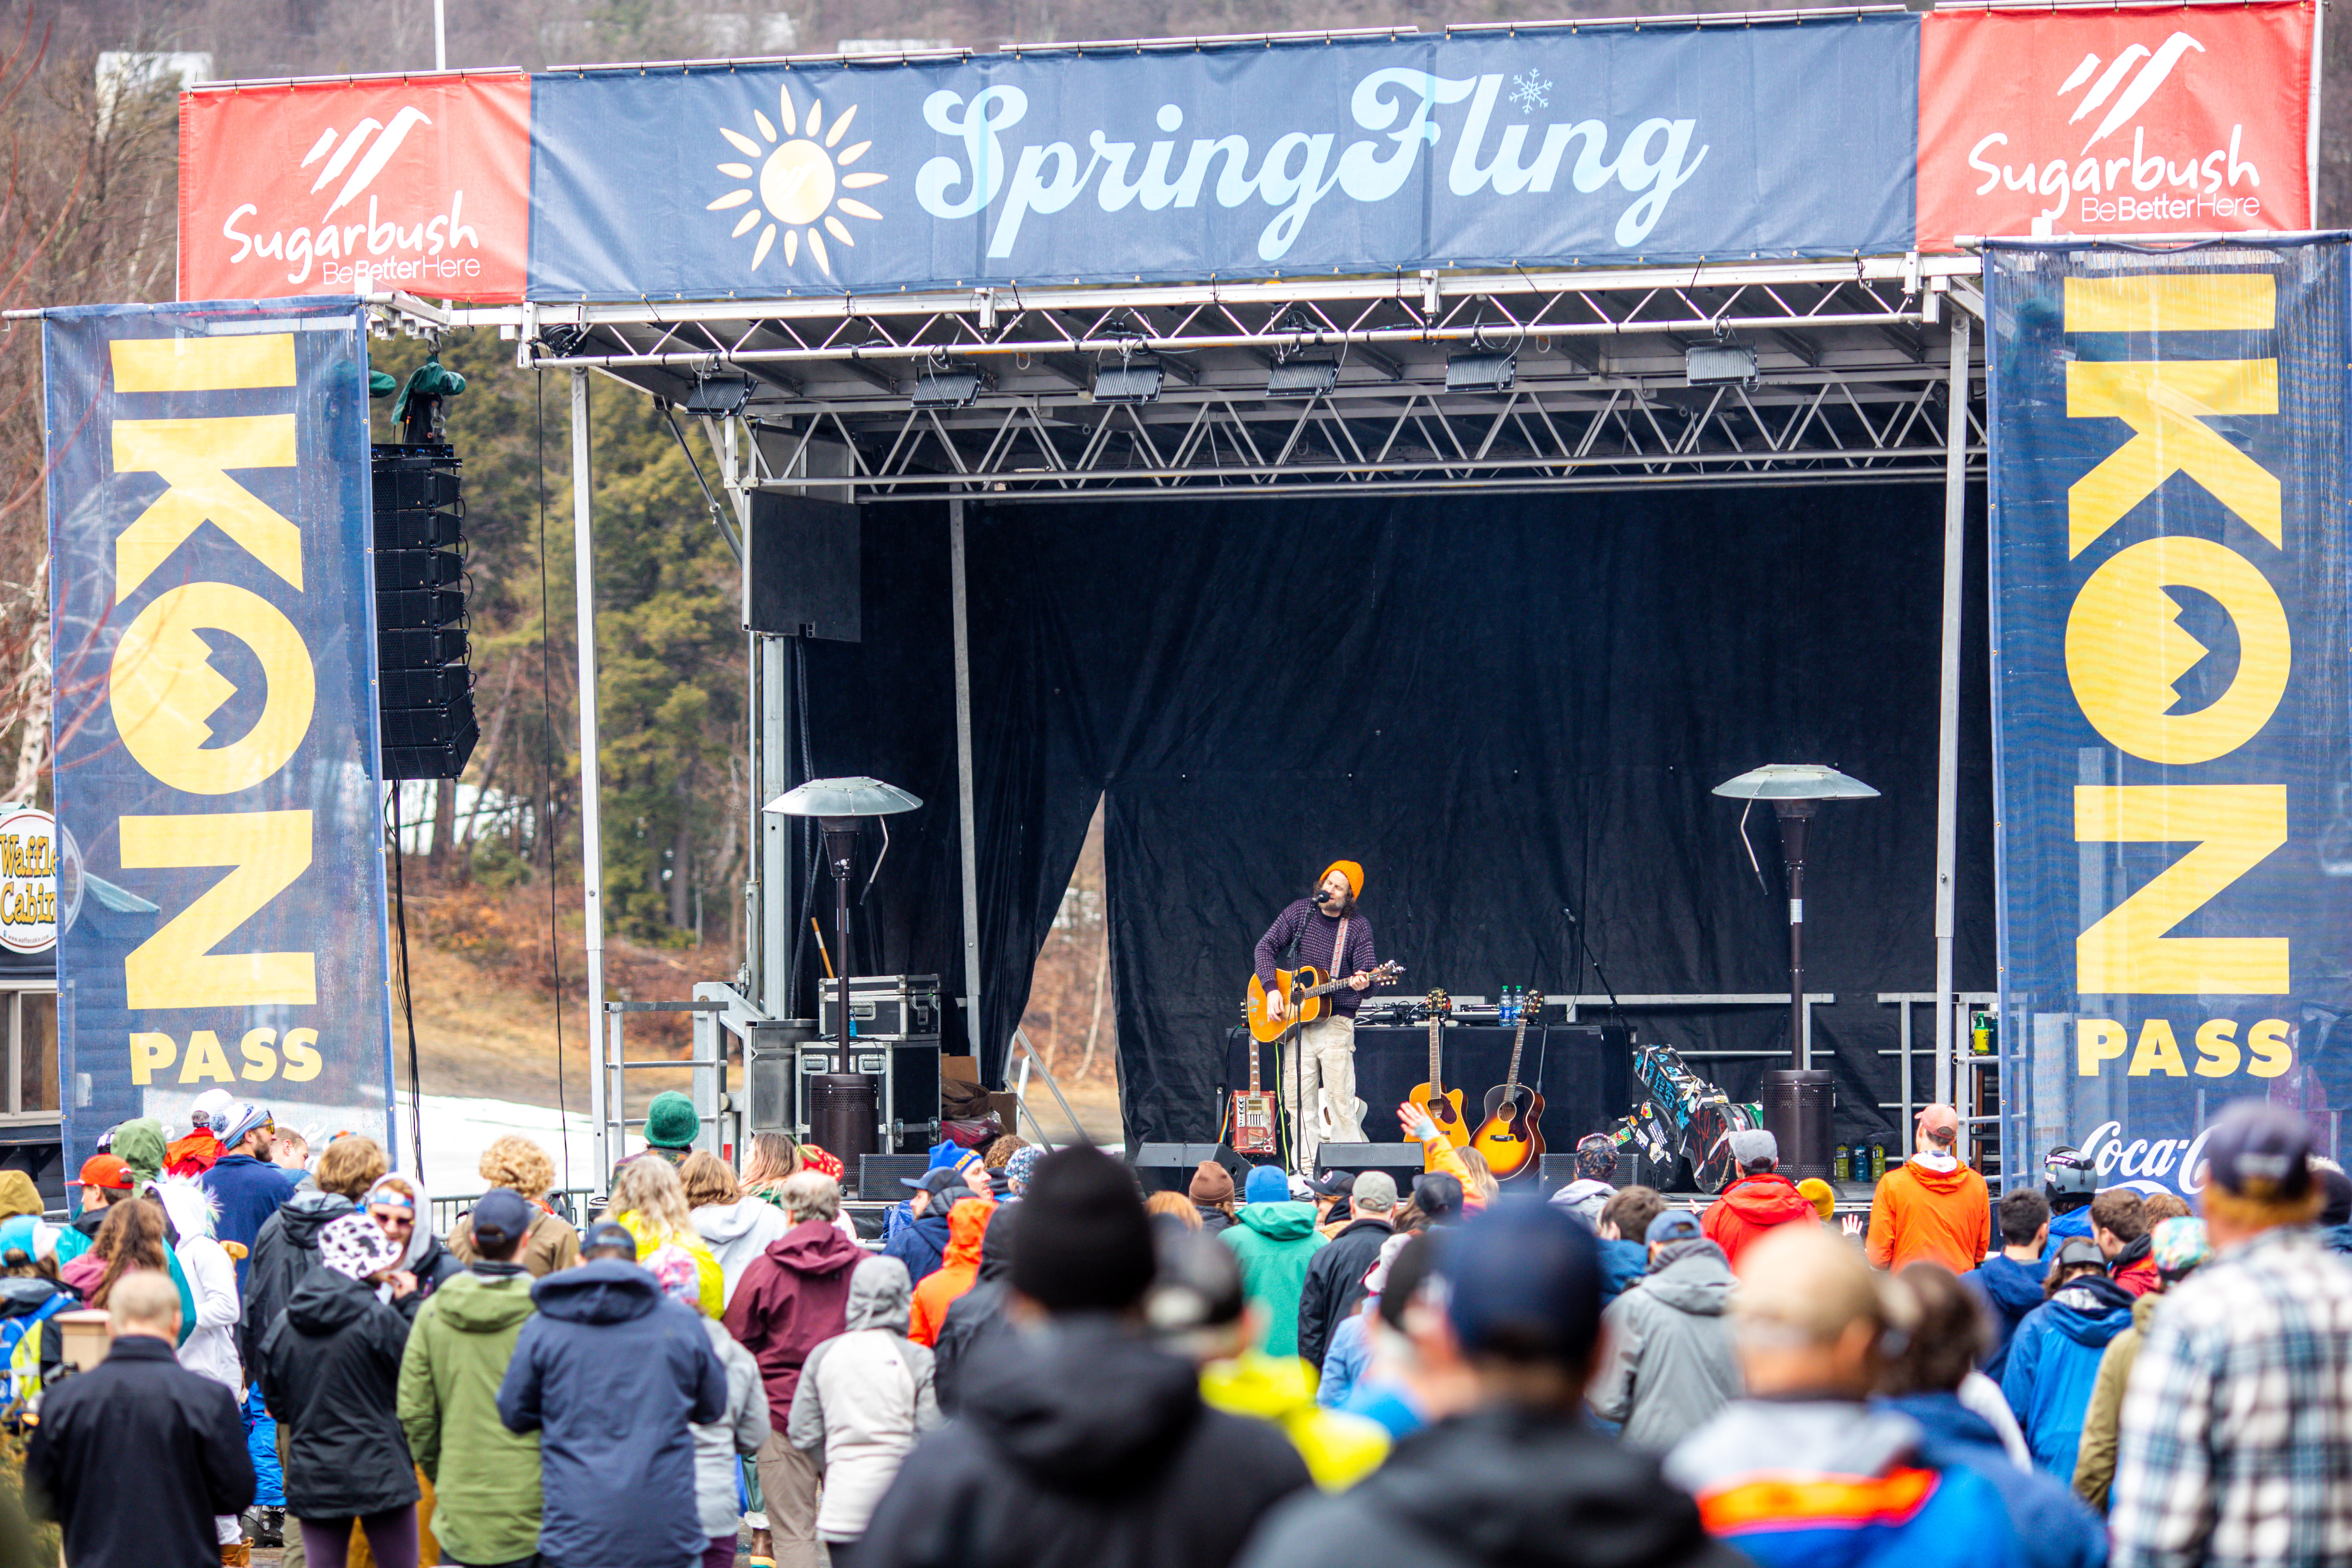 Spring Fling event stage